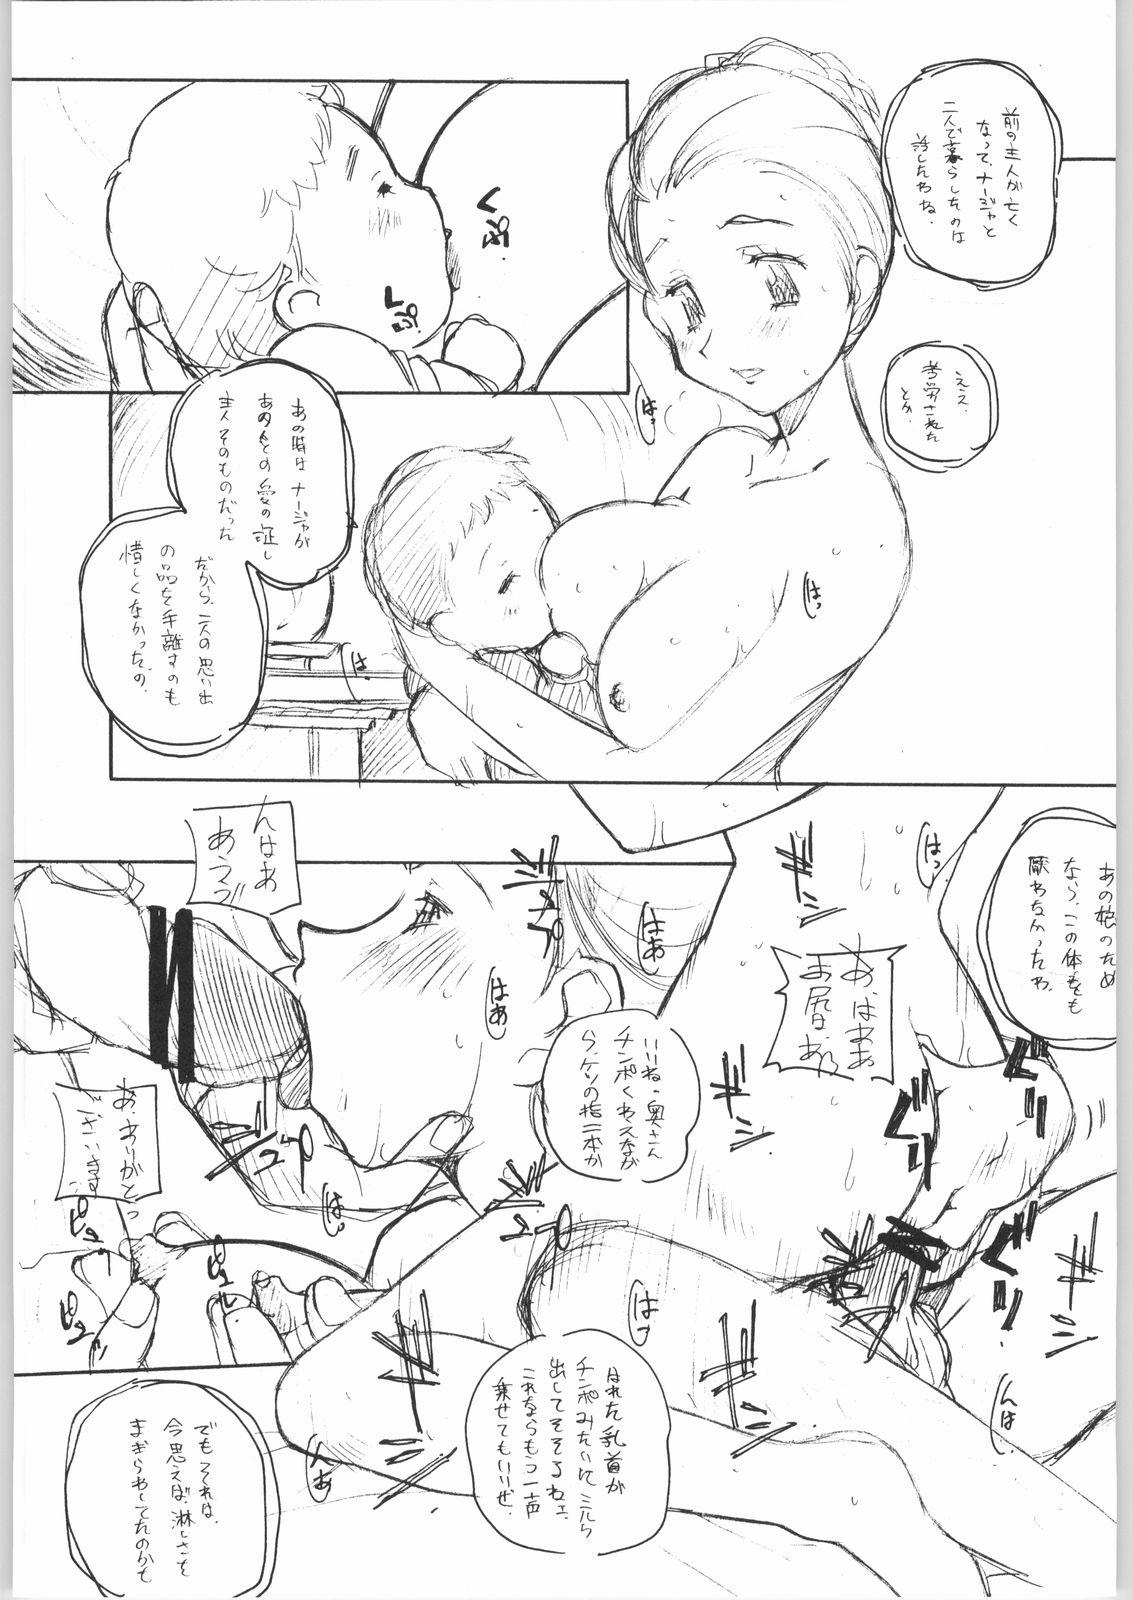 Tiny Tits Suki-Suki - Sakura taisen Xenosaga Ashita no nadja Gad guard Bdsm - Page 12